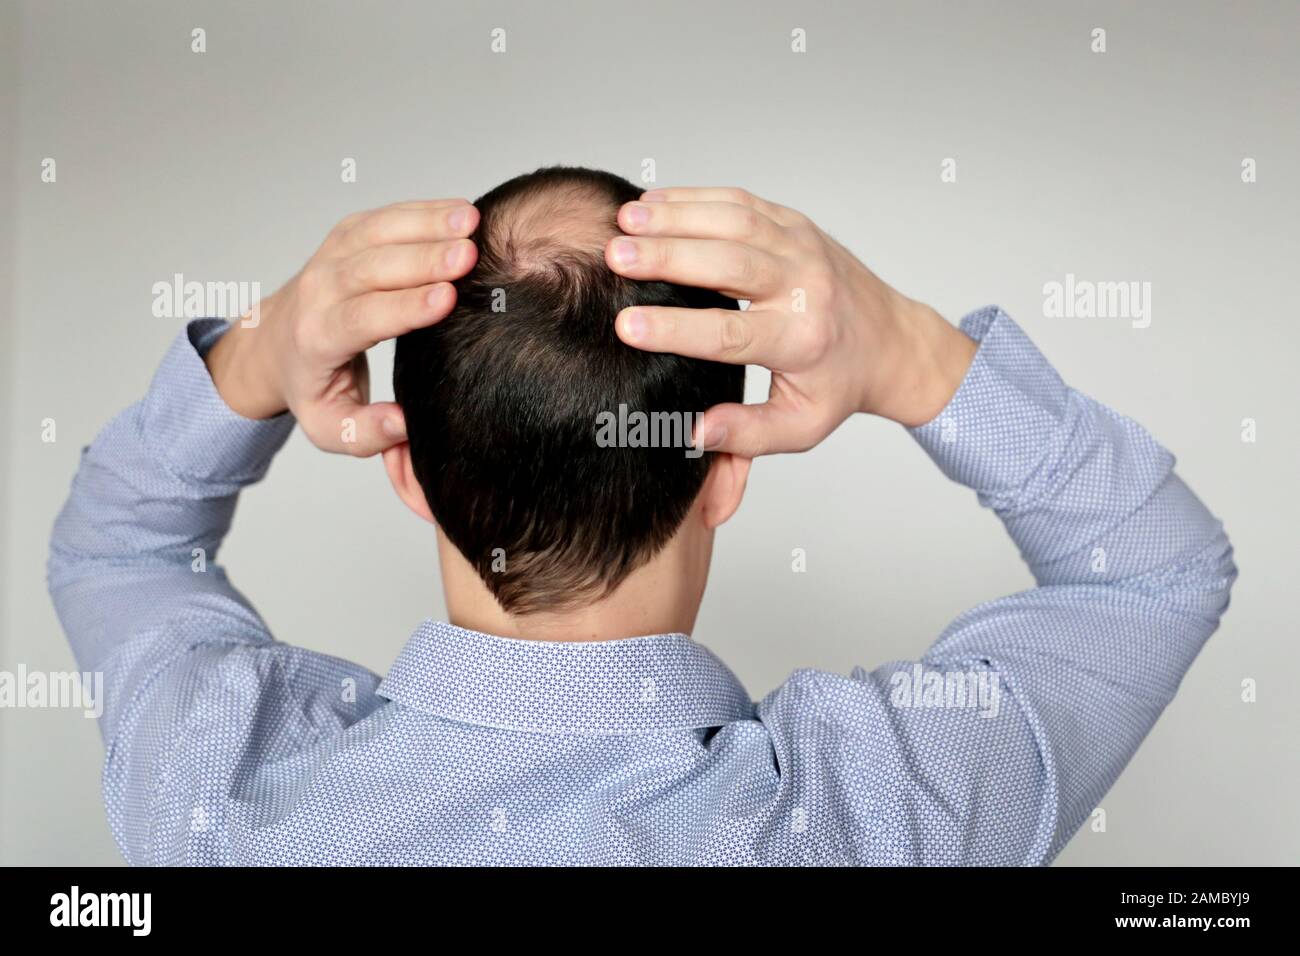 Kahlheit, Mann im Bürotrikot besorgt über Haarausfall. Männerkopf mit kahlem, Konzept von Stress bei der Arbeit Stockfoto